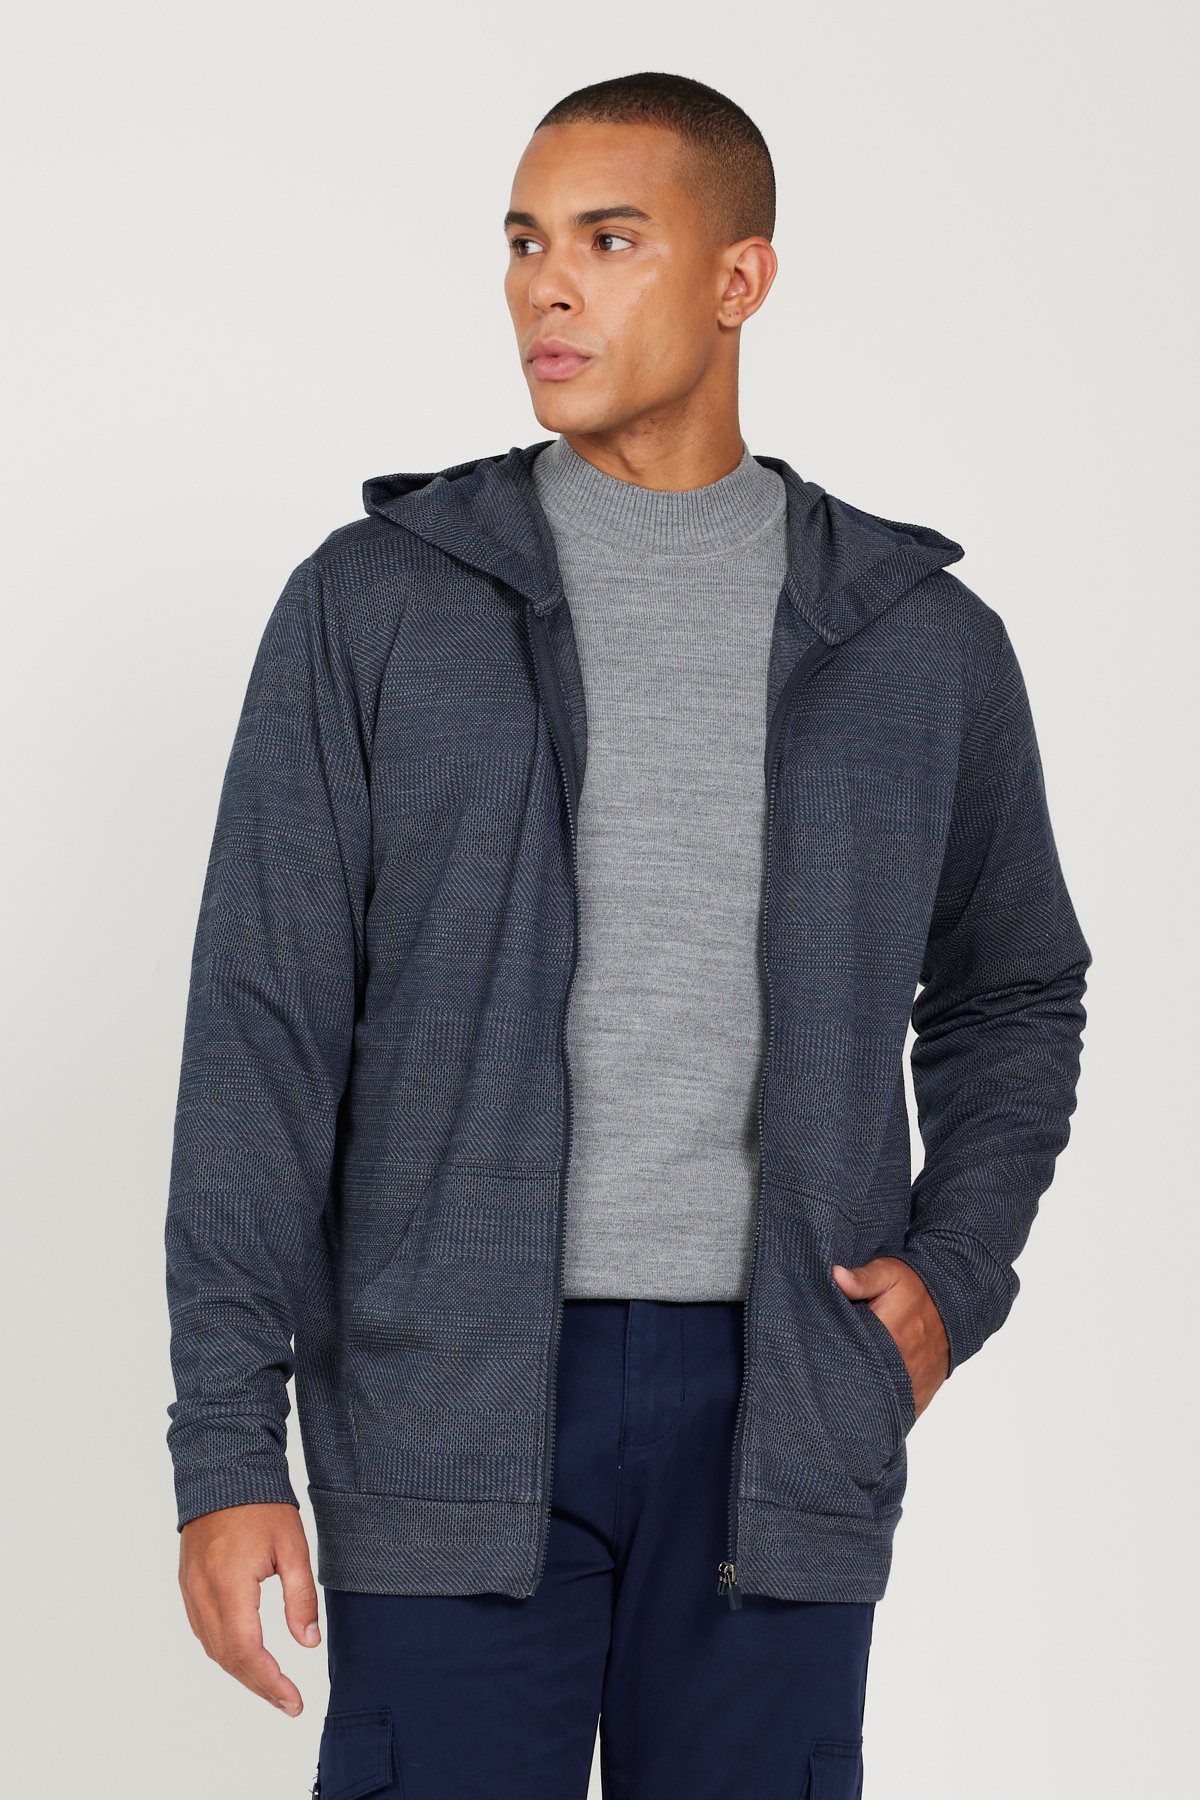 Levně AC&Co / Altınyıldız Classics Men's Navy Blue-gray Standard Fit Regular Fit Hooded Zipper Sweatshirt Jacket